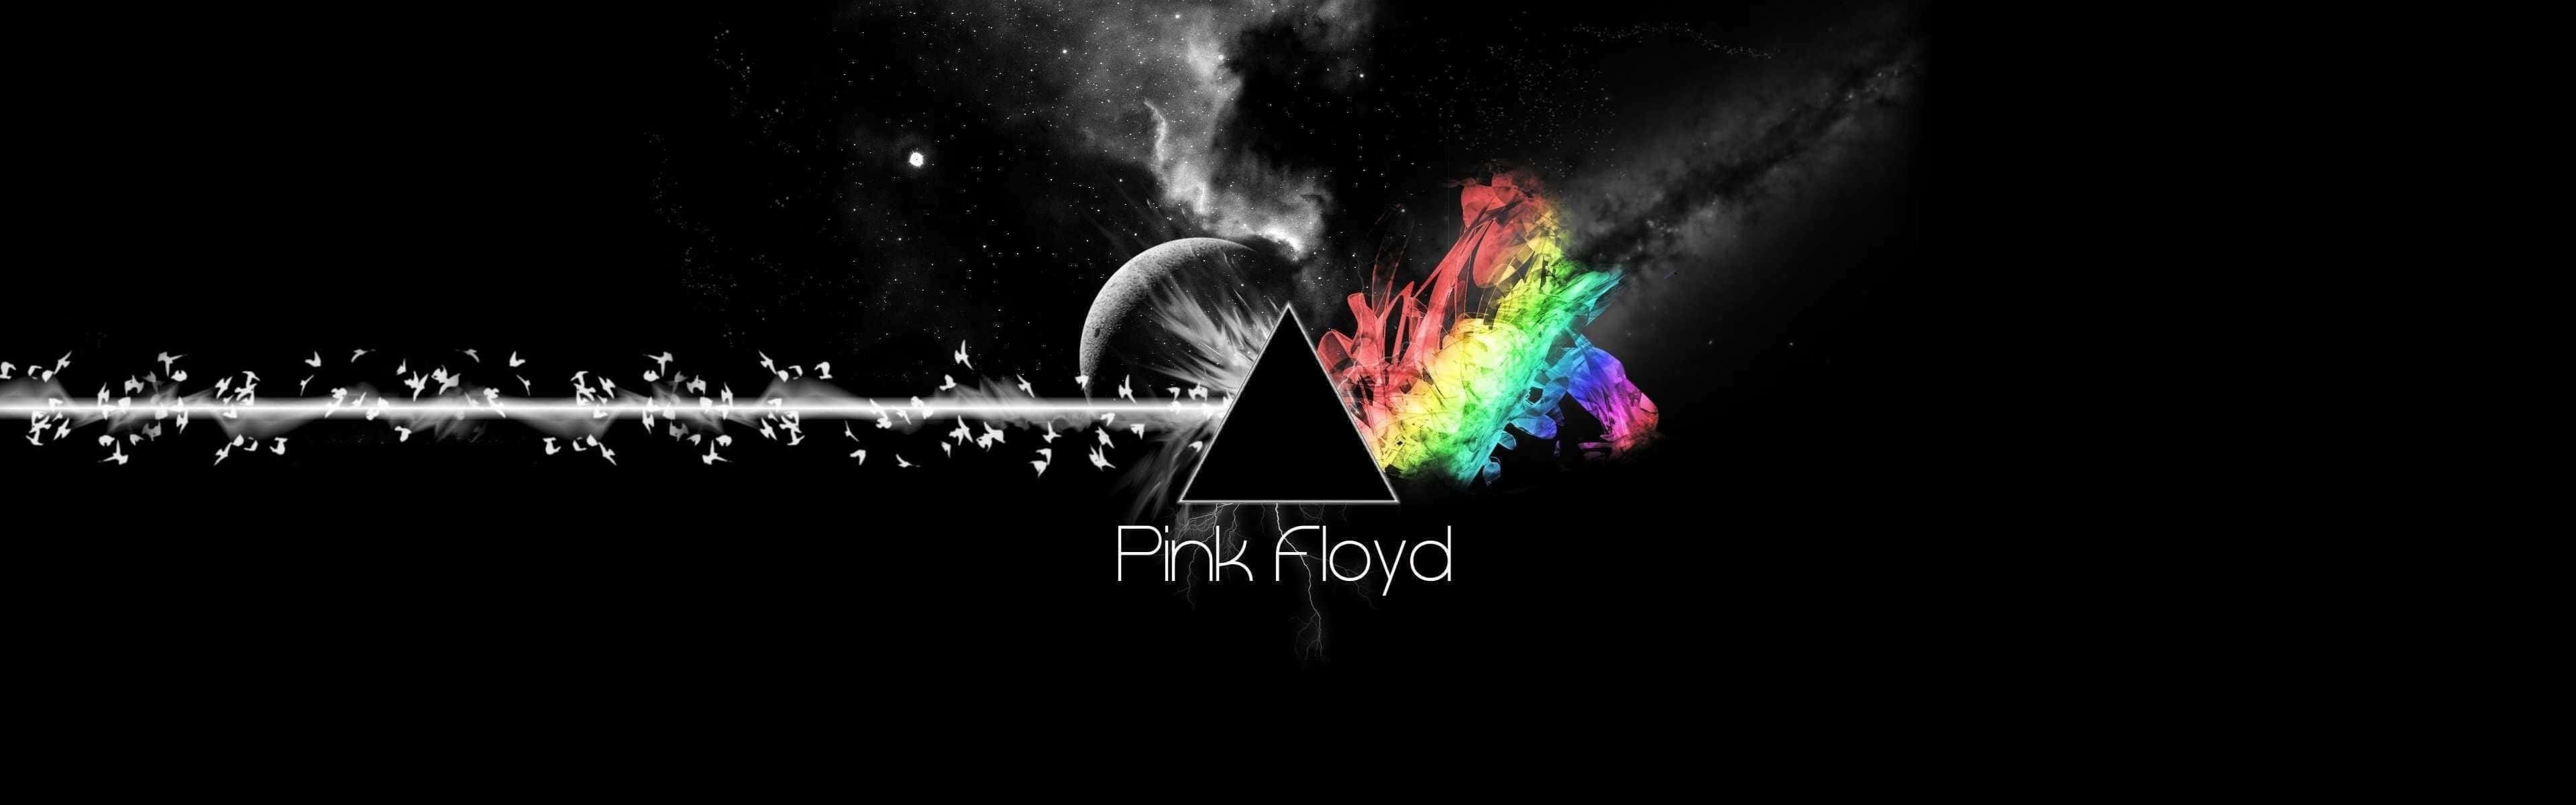 Pink Floyd Wallpapers, Pink Floyd Wallpapers, Pink Floyd Wallpapers Wallpaper